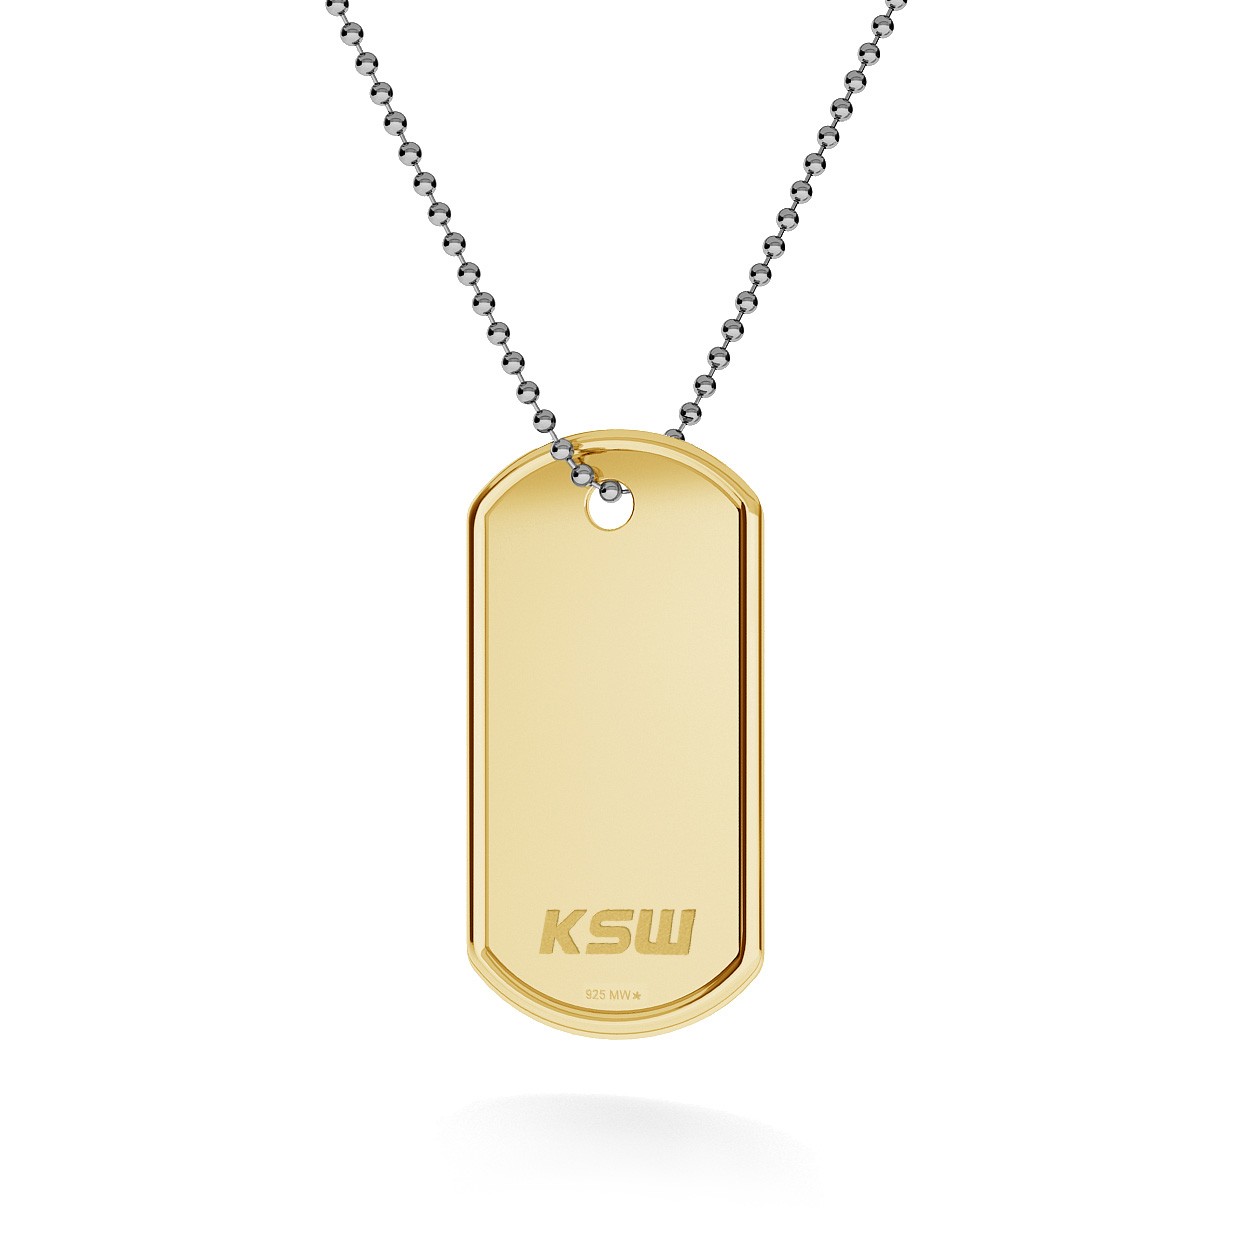 Srebrny nieśmiertelnik naszyjnik z logo KSW, łańcuch kulkowy, srebro 925